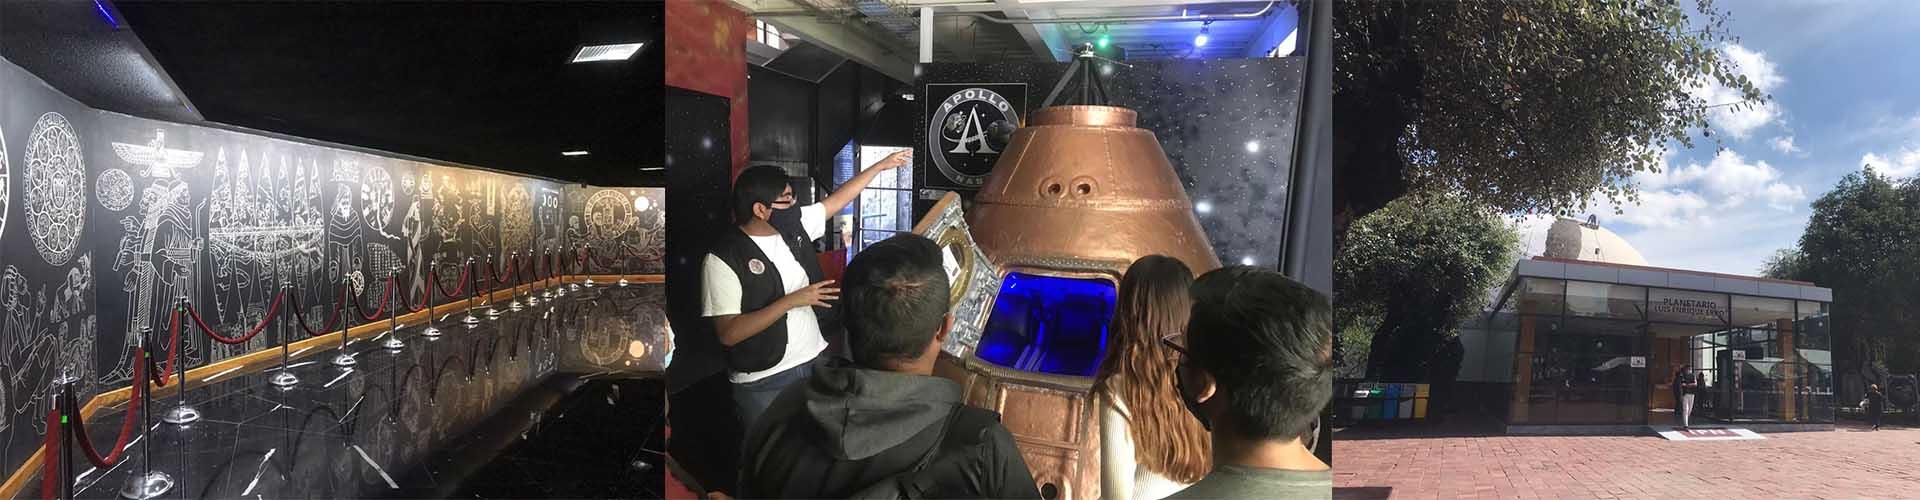 Abre sus puertas el Planetario "Luis Enrique Erro"